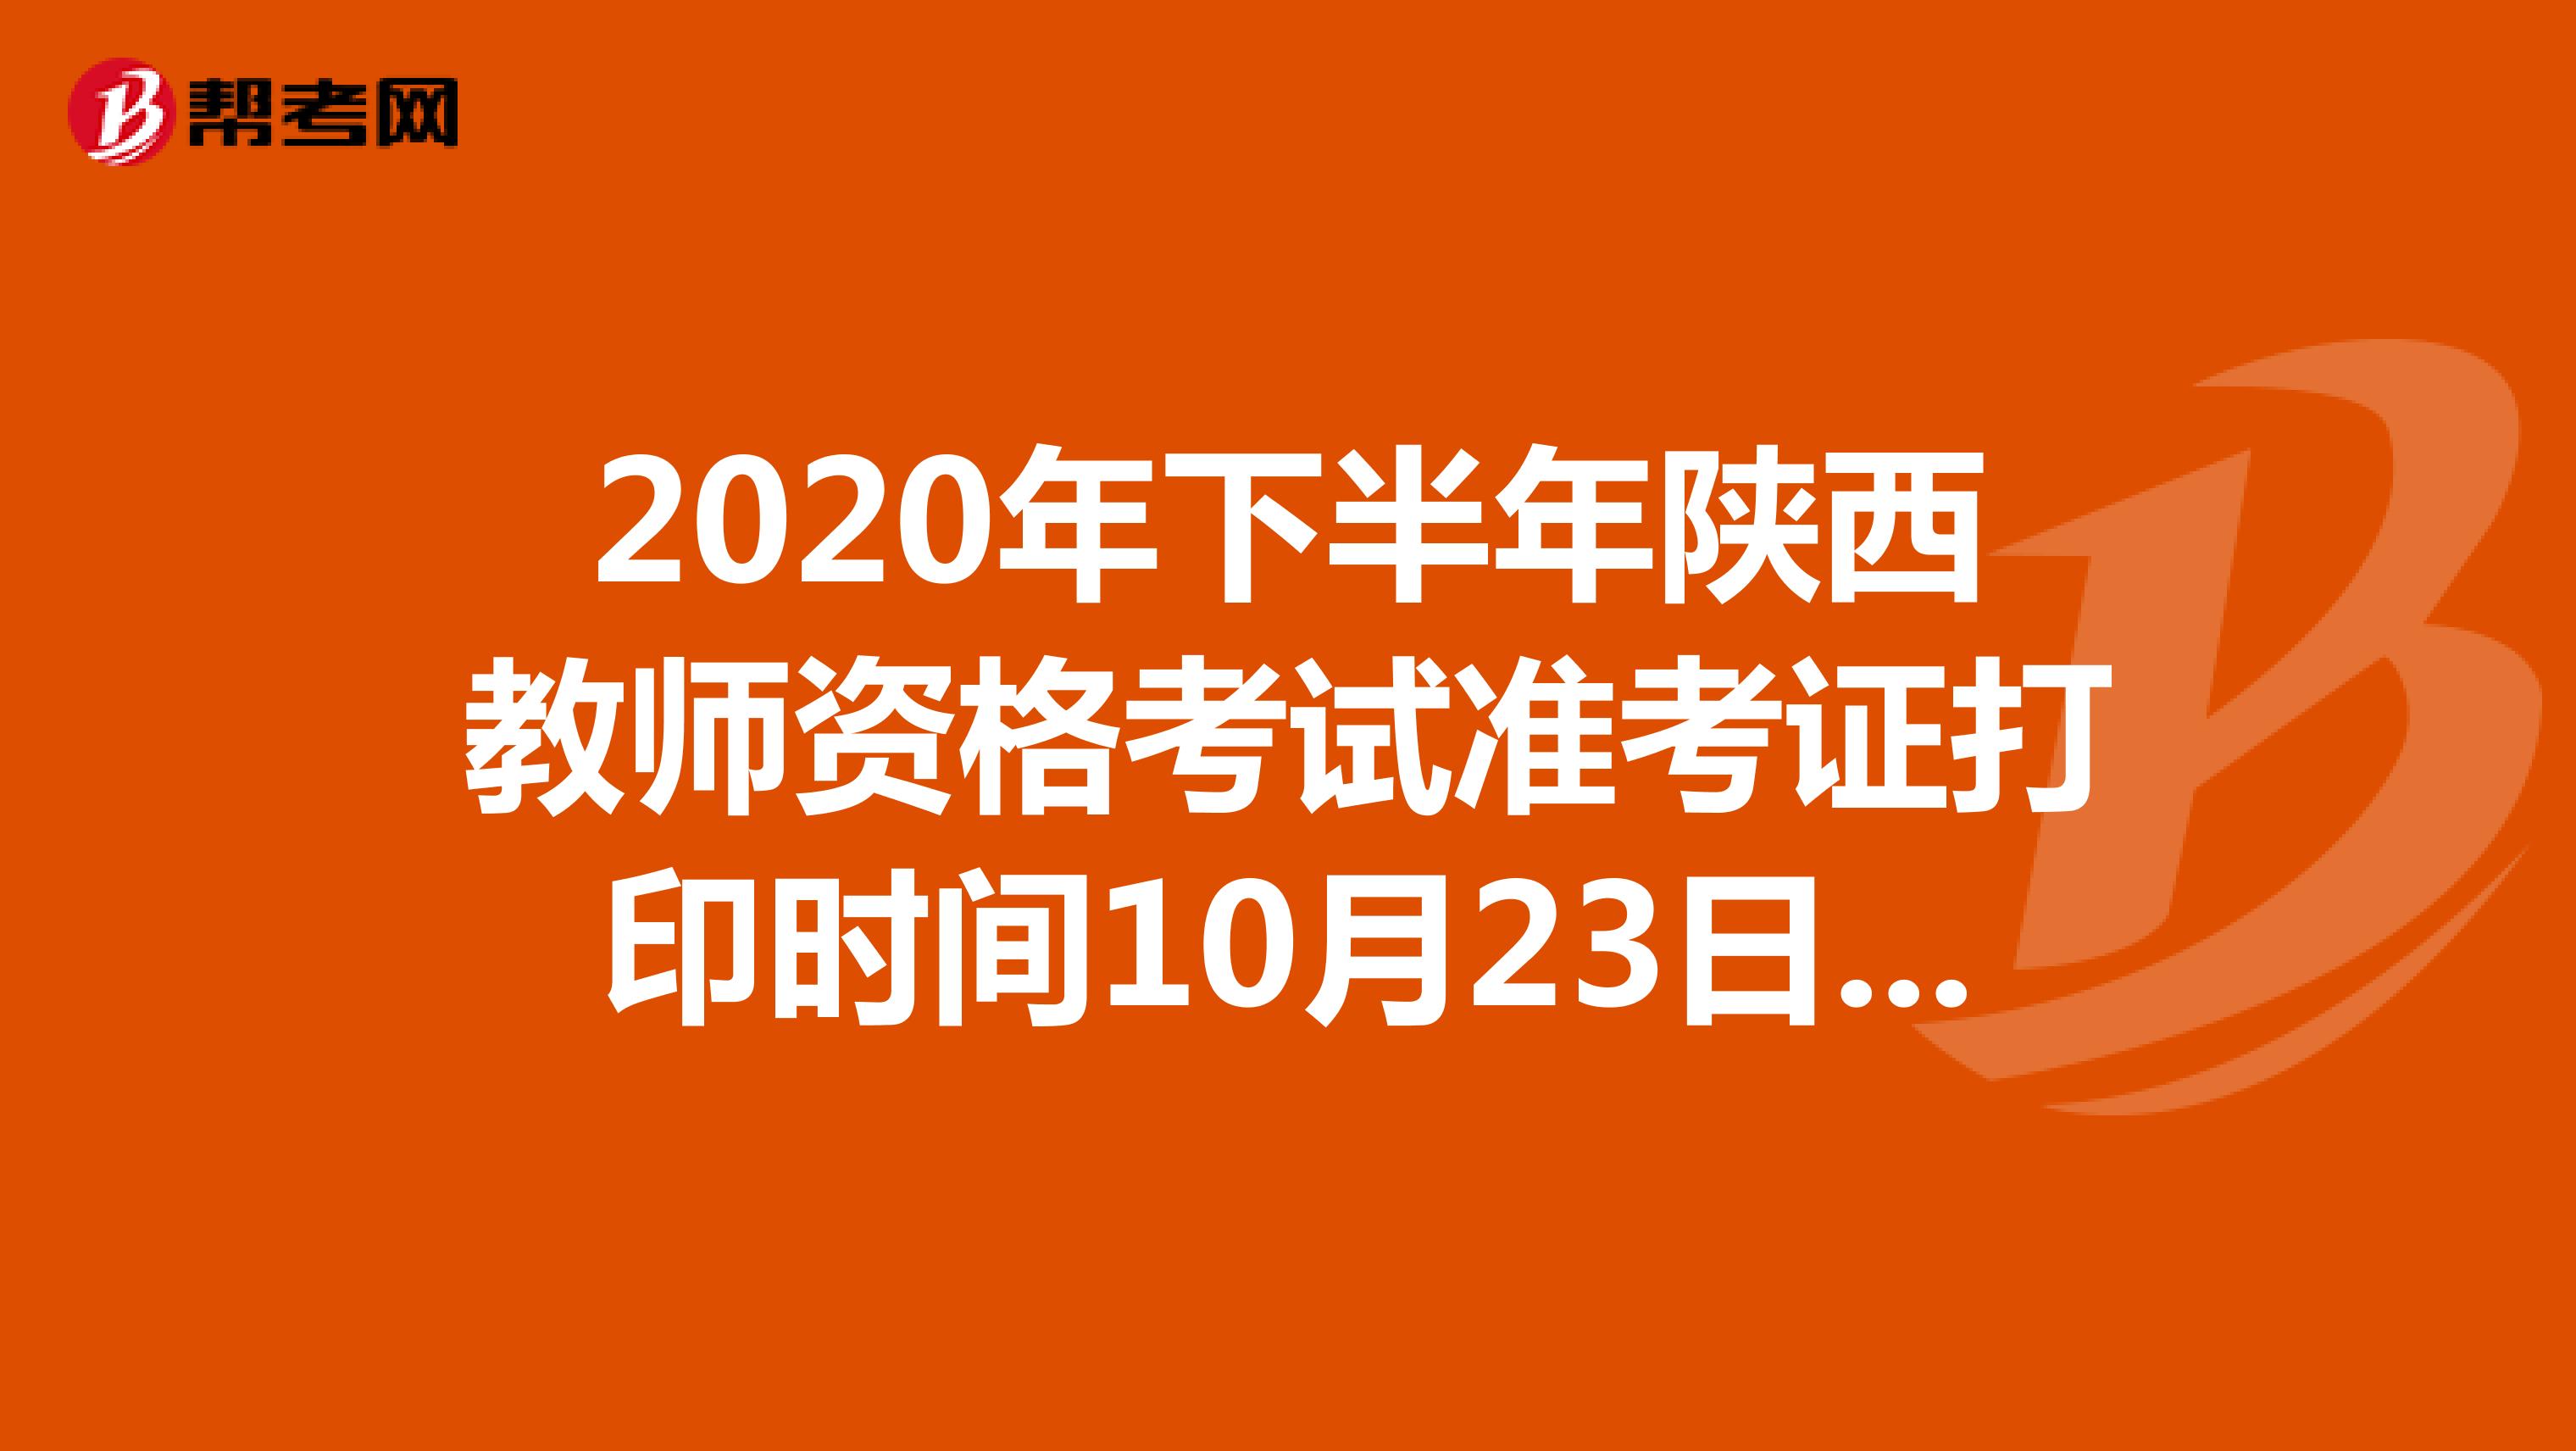 2020年下半年陕西教师资格考试准考证打印时间10月23日-31日